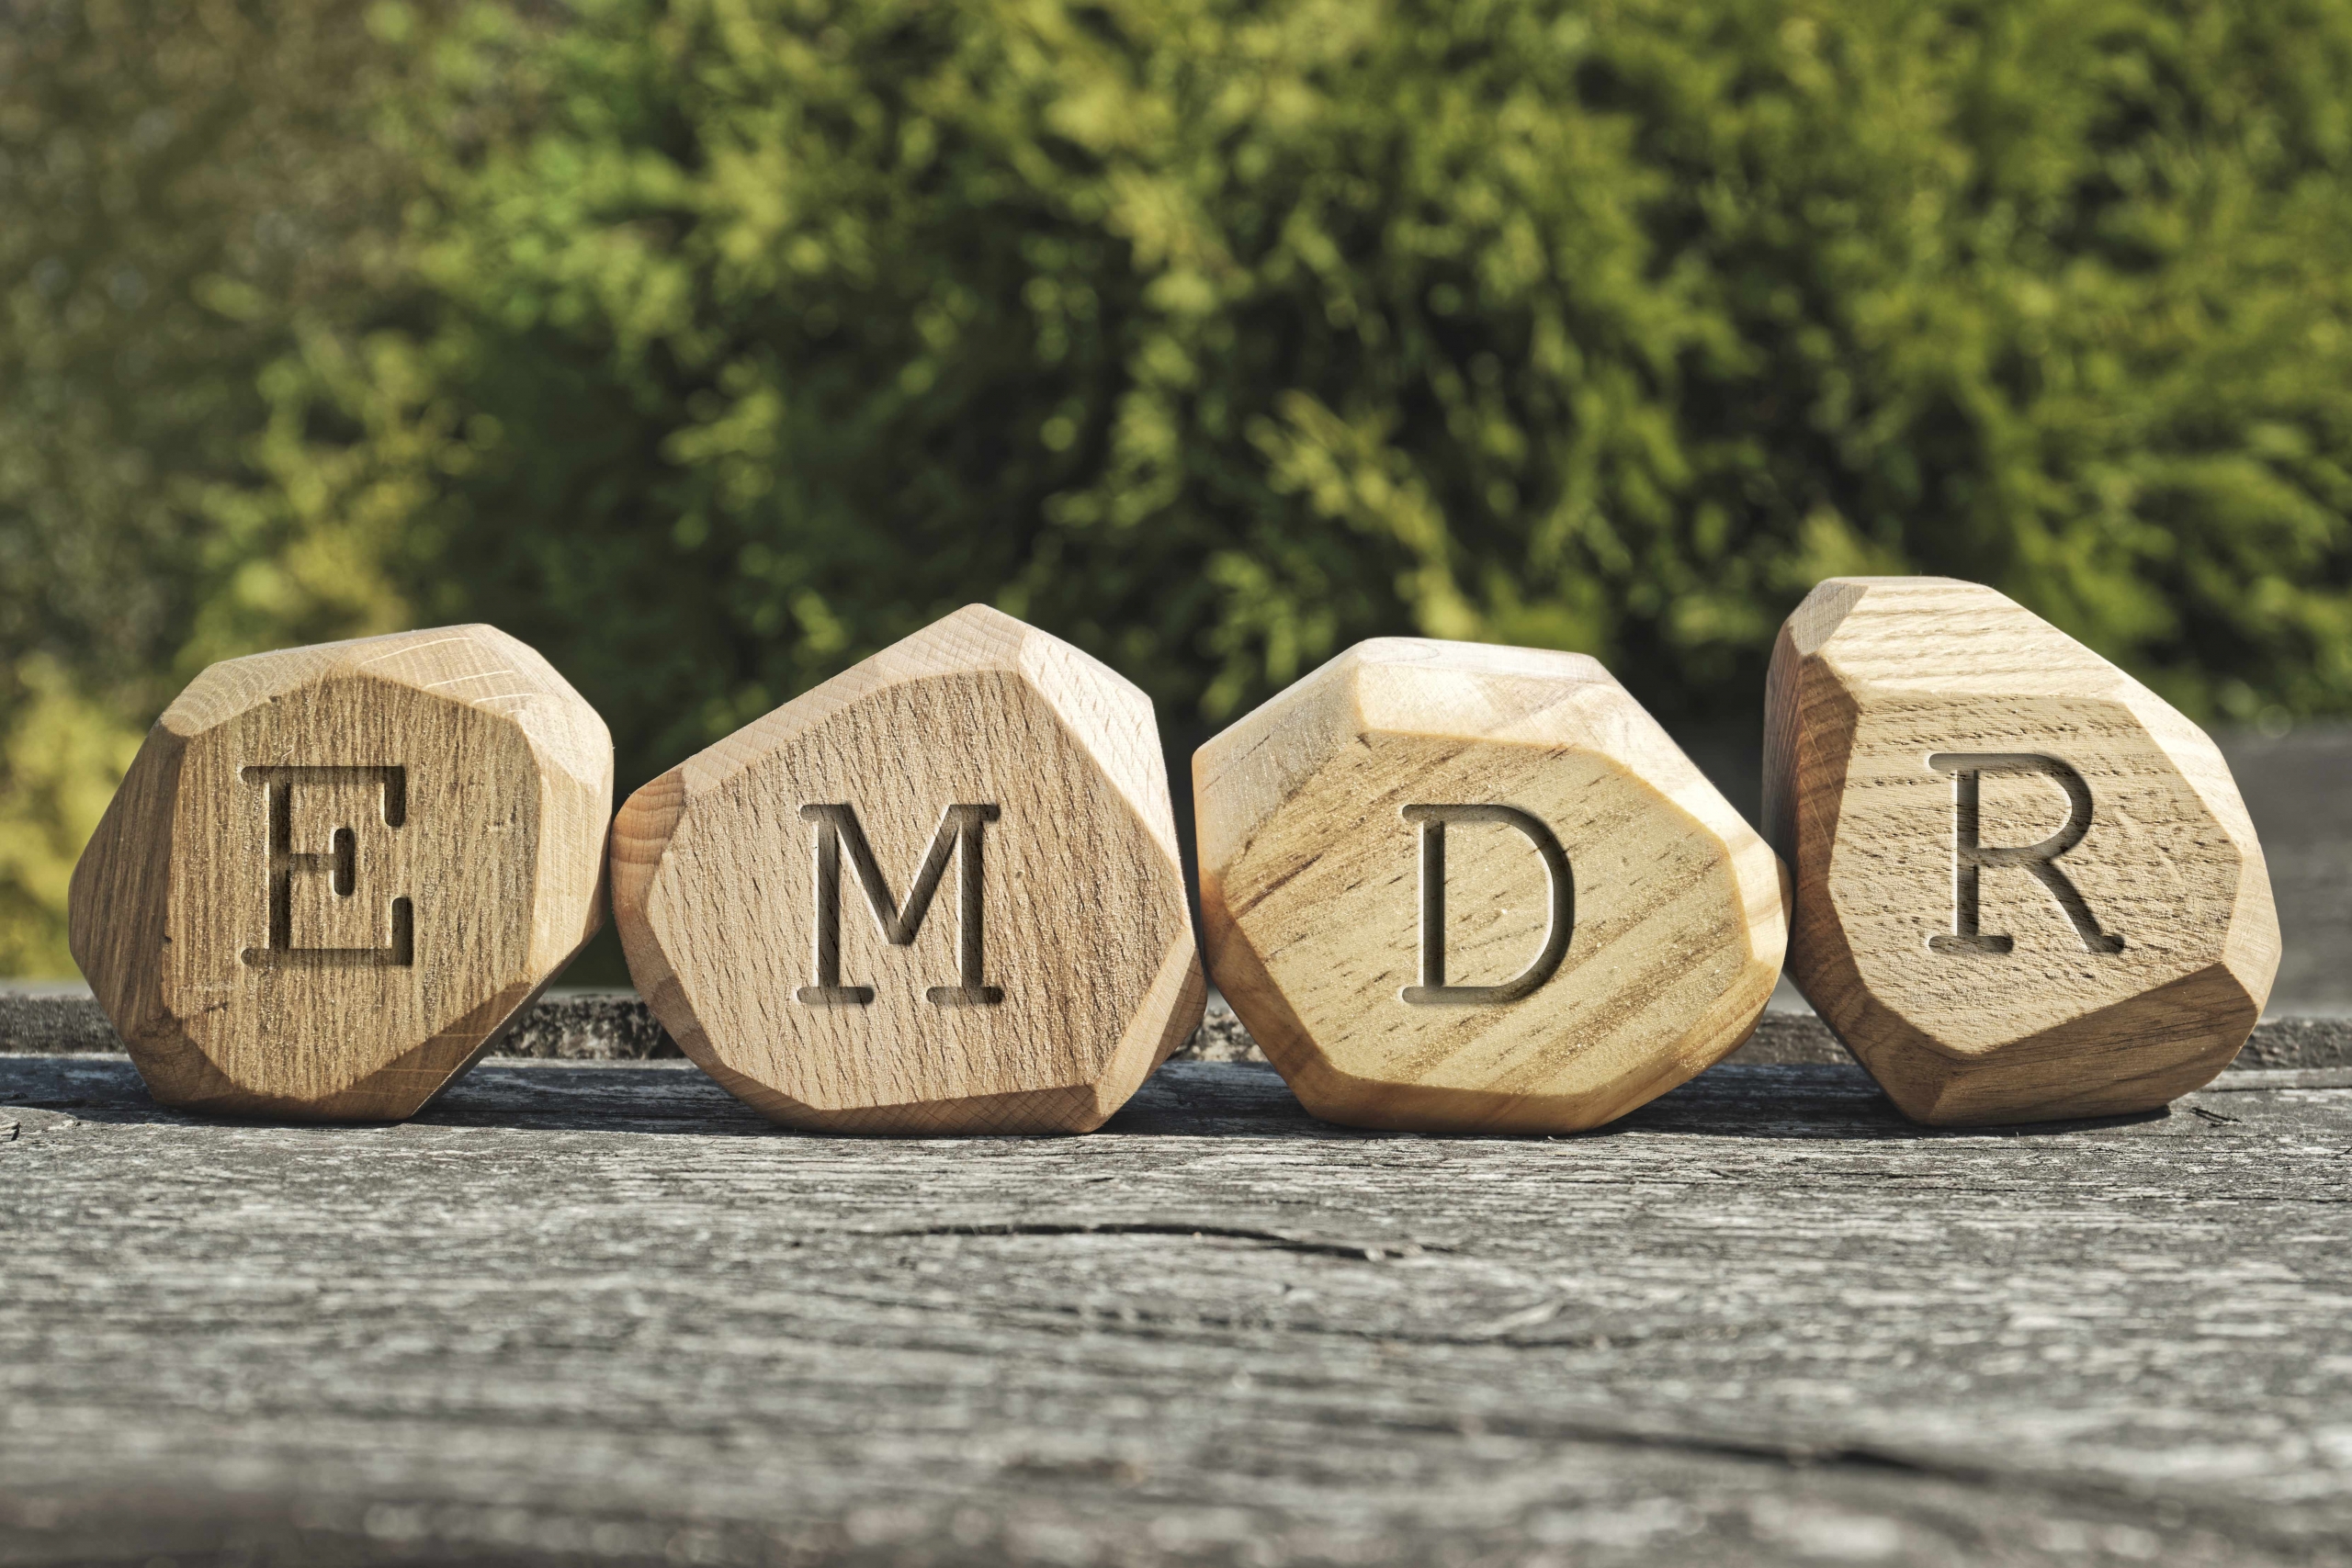 Holzwürfel mit EMDR Buchstaben